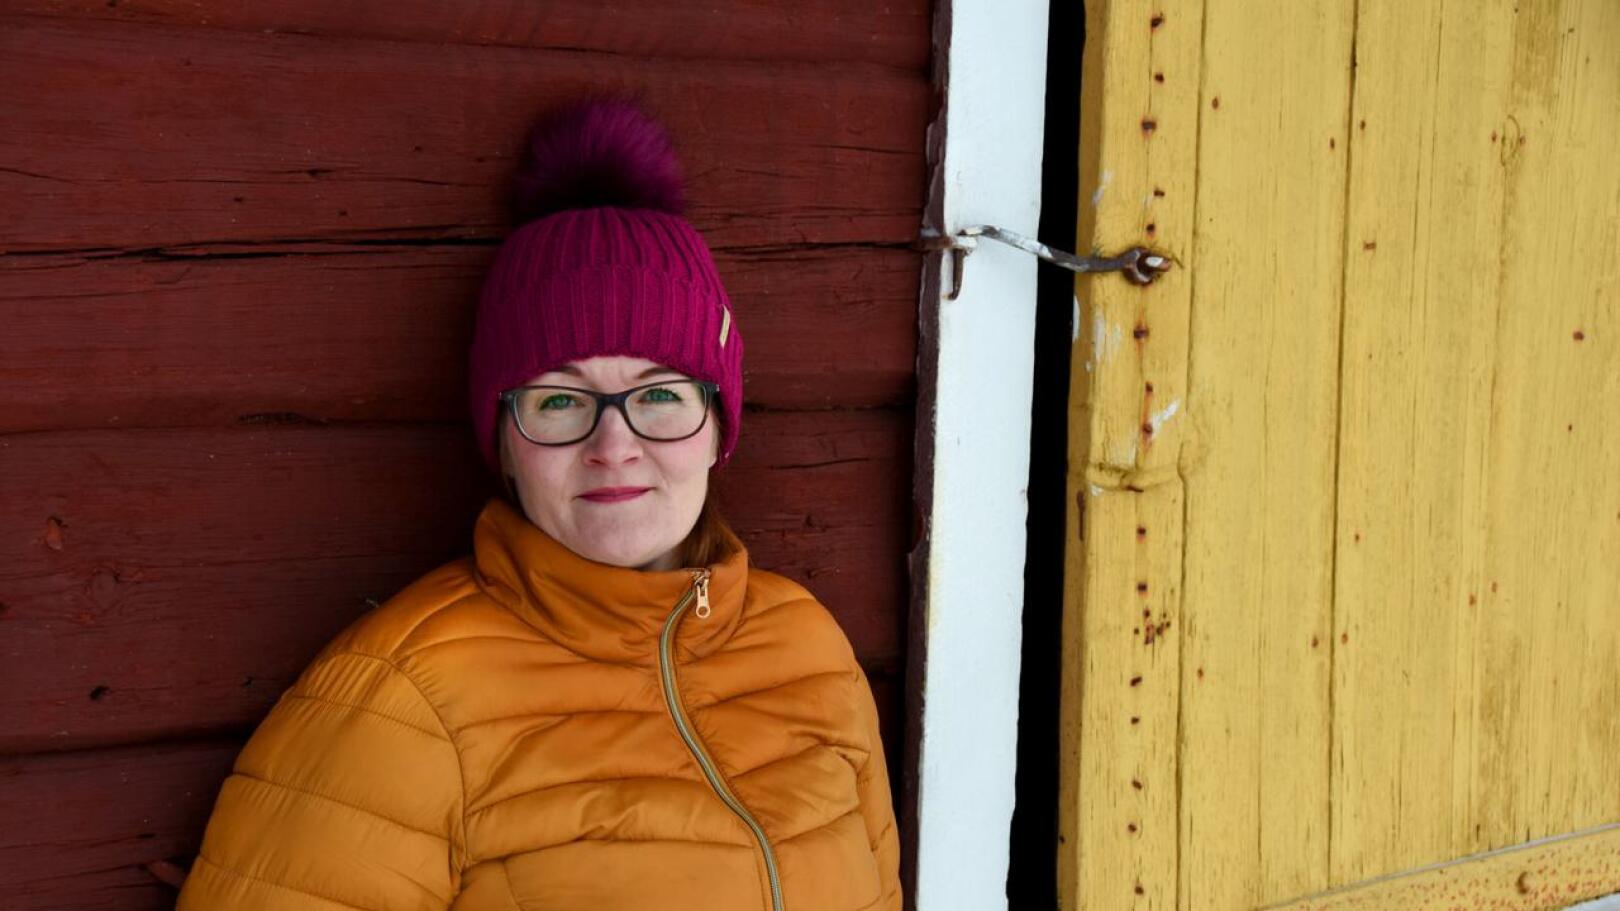 Päivi Ollila on maatalousyrittäjä Ainalin kylältä. Hän nousi vuonna 2017 ensimmäisellä yrittämällä Haapaveden kaupunginvaltuustoon 183 äänellä, mikä oli paikkakunnan suurin henkilökohtainen äänimäärä.